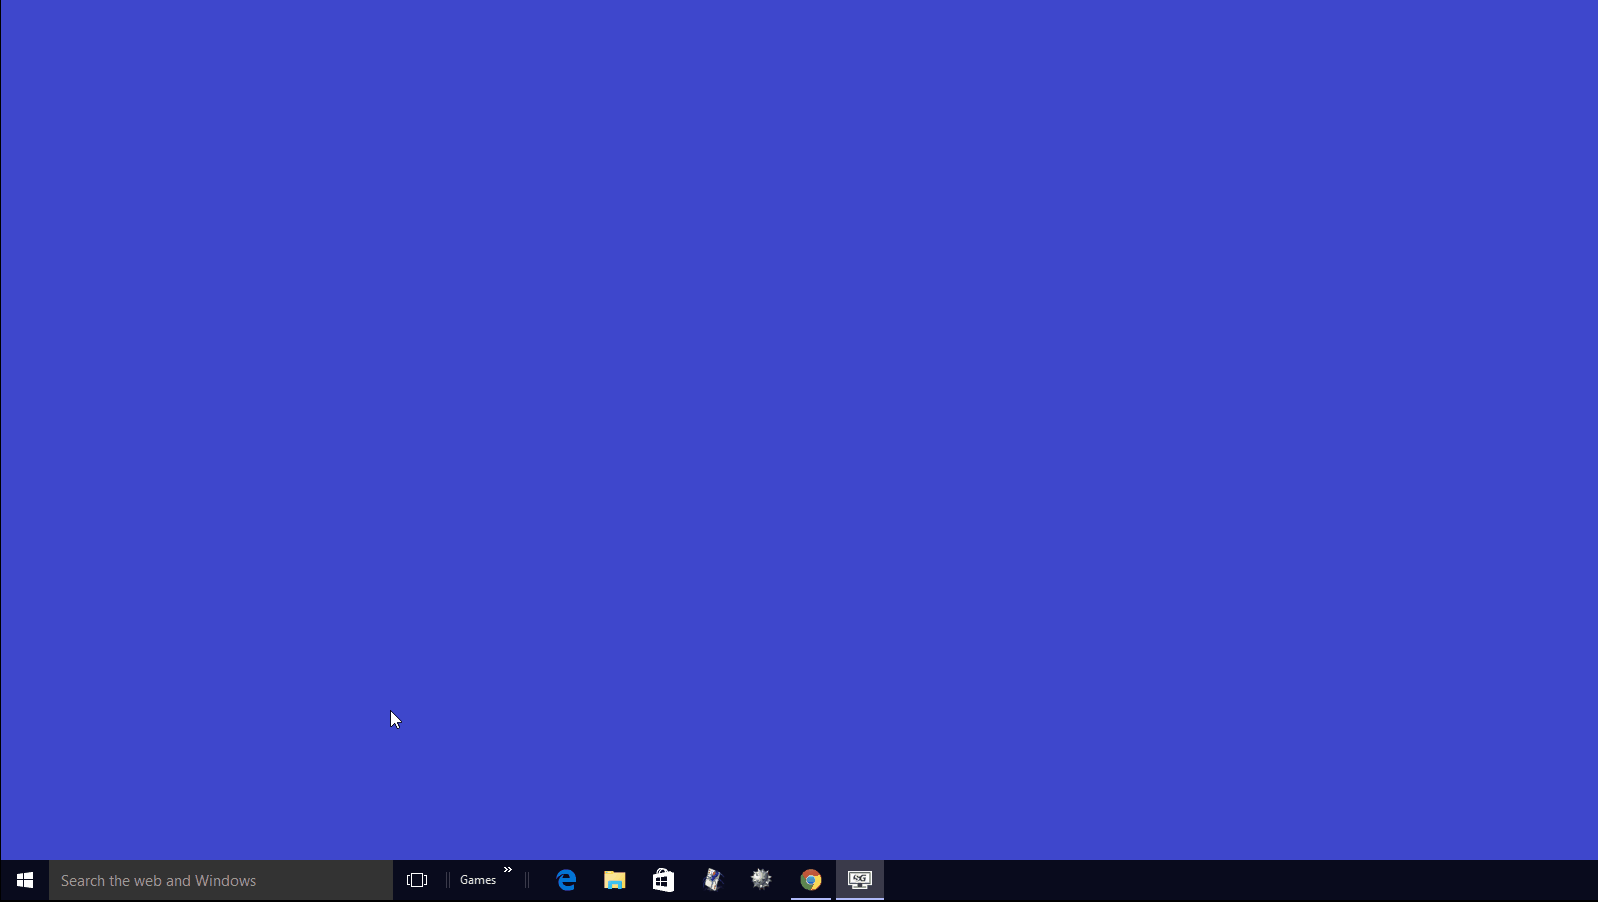 Windows 10 gif. Завершение работы Windows gif. Выключение экрана. Завершение работы Windows 10 gif. Завершения работы Windows гиф.